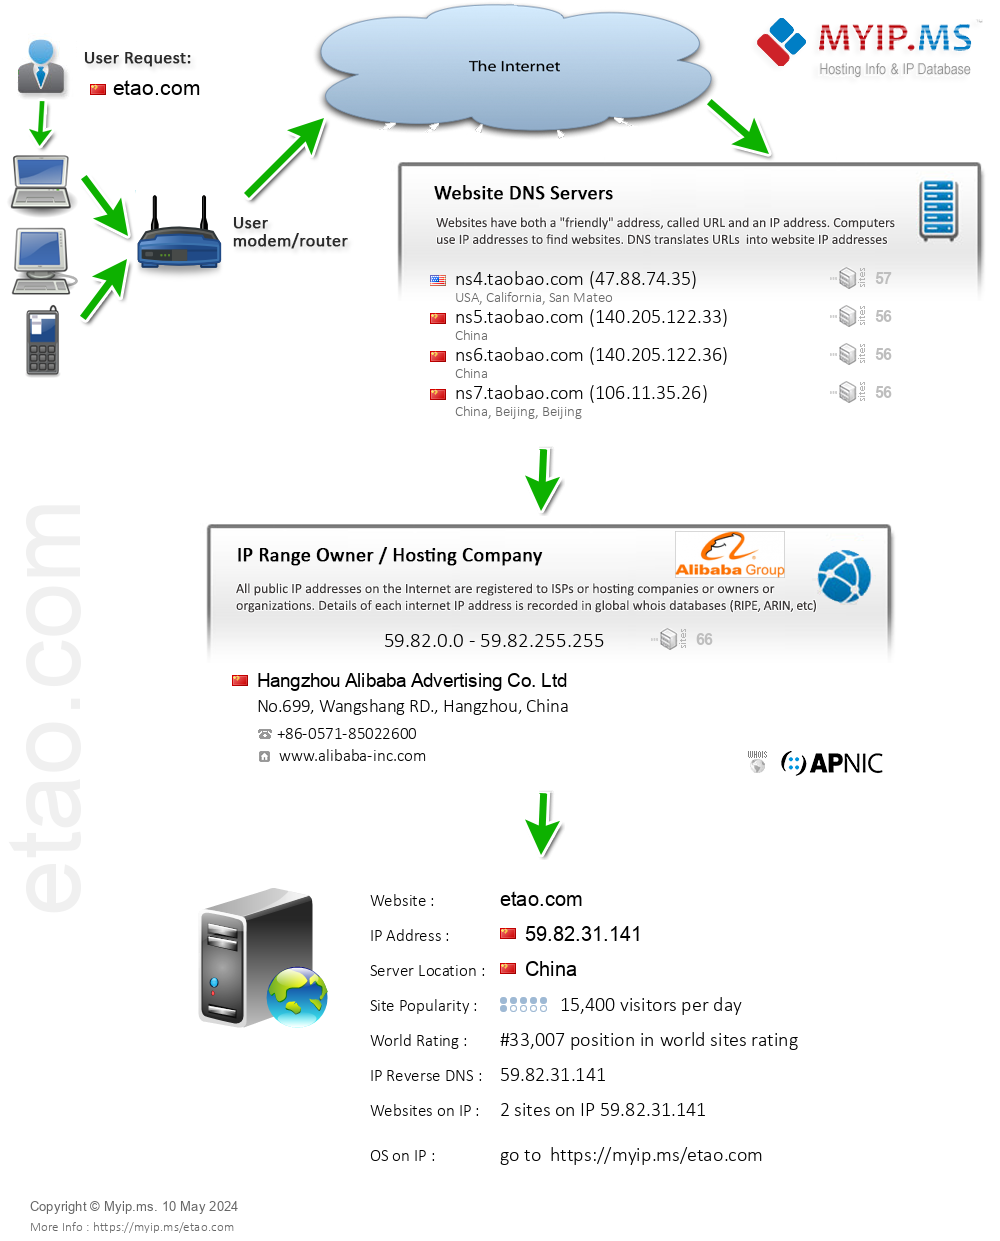 Etao.com - Website Hosting Visual IP Diagram